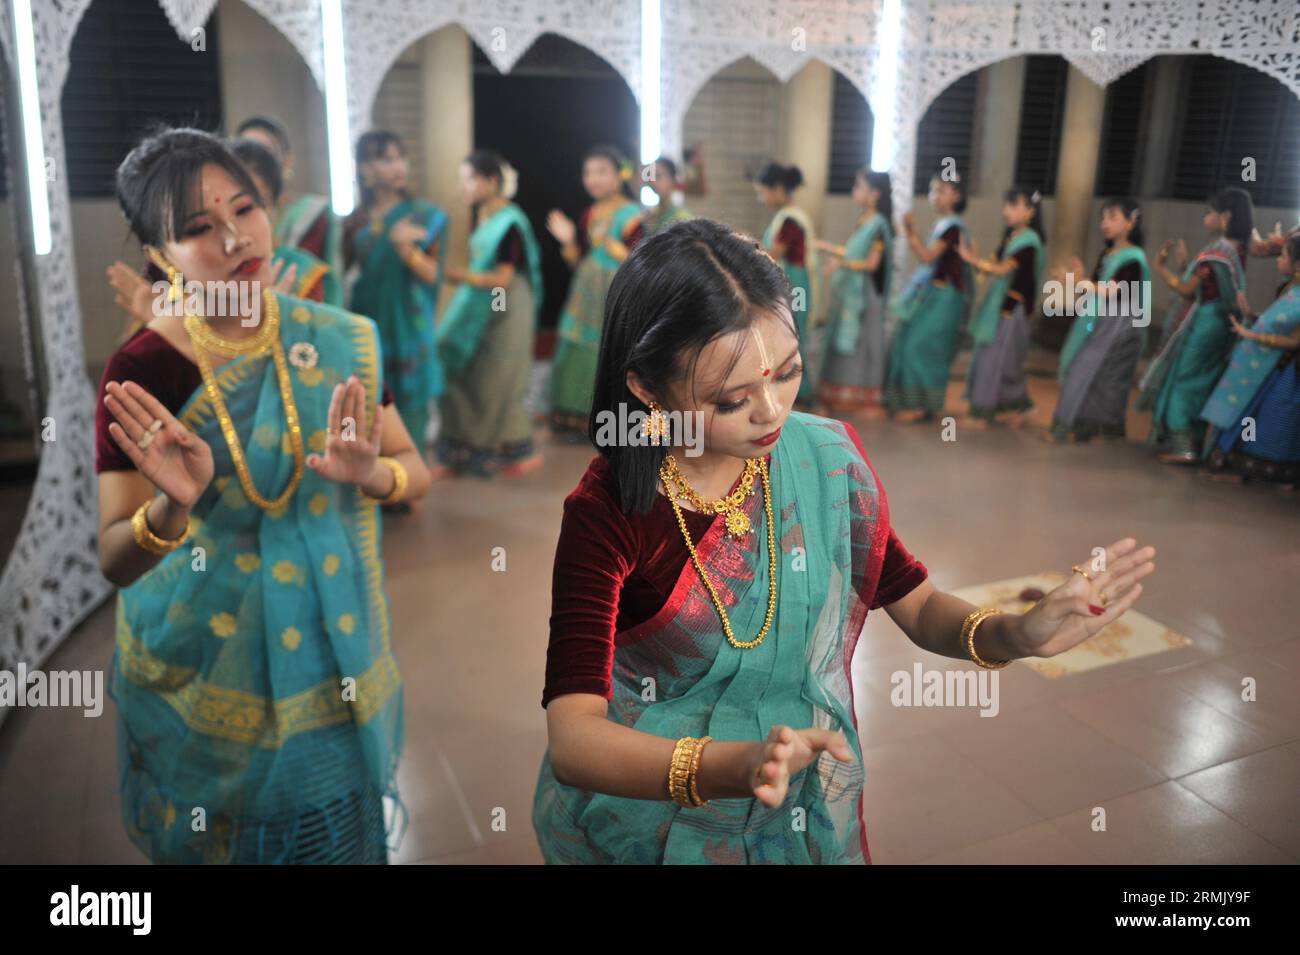 Die manipuri-Gemeinde tanzt mit ihren traditionellen Kleidern. Sie feiern das Jhulan Yatra Festival, eines der wichtigsten Festivals in Shibganj. Sylhet, Bangladesch. Stockfoto